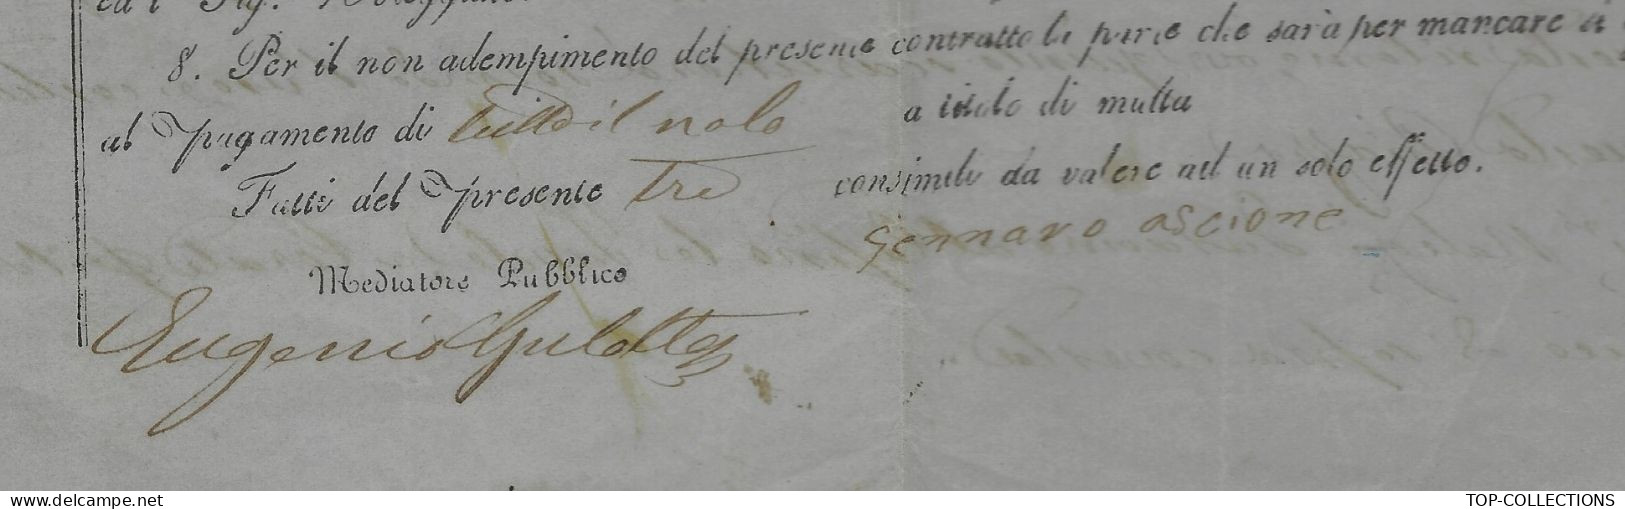 NAVIGATION ITALIE Parleme 1860  RARE CONTRAT D’ AFFRETEMENT CONTRATTO DI NOLEGGIO Pour Porto Palo Sicile - Italien